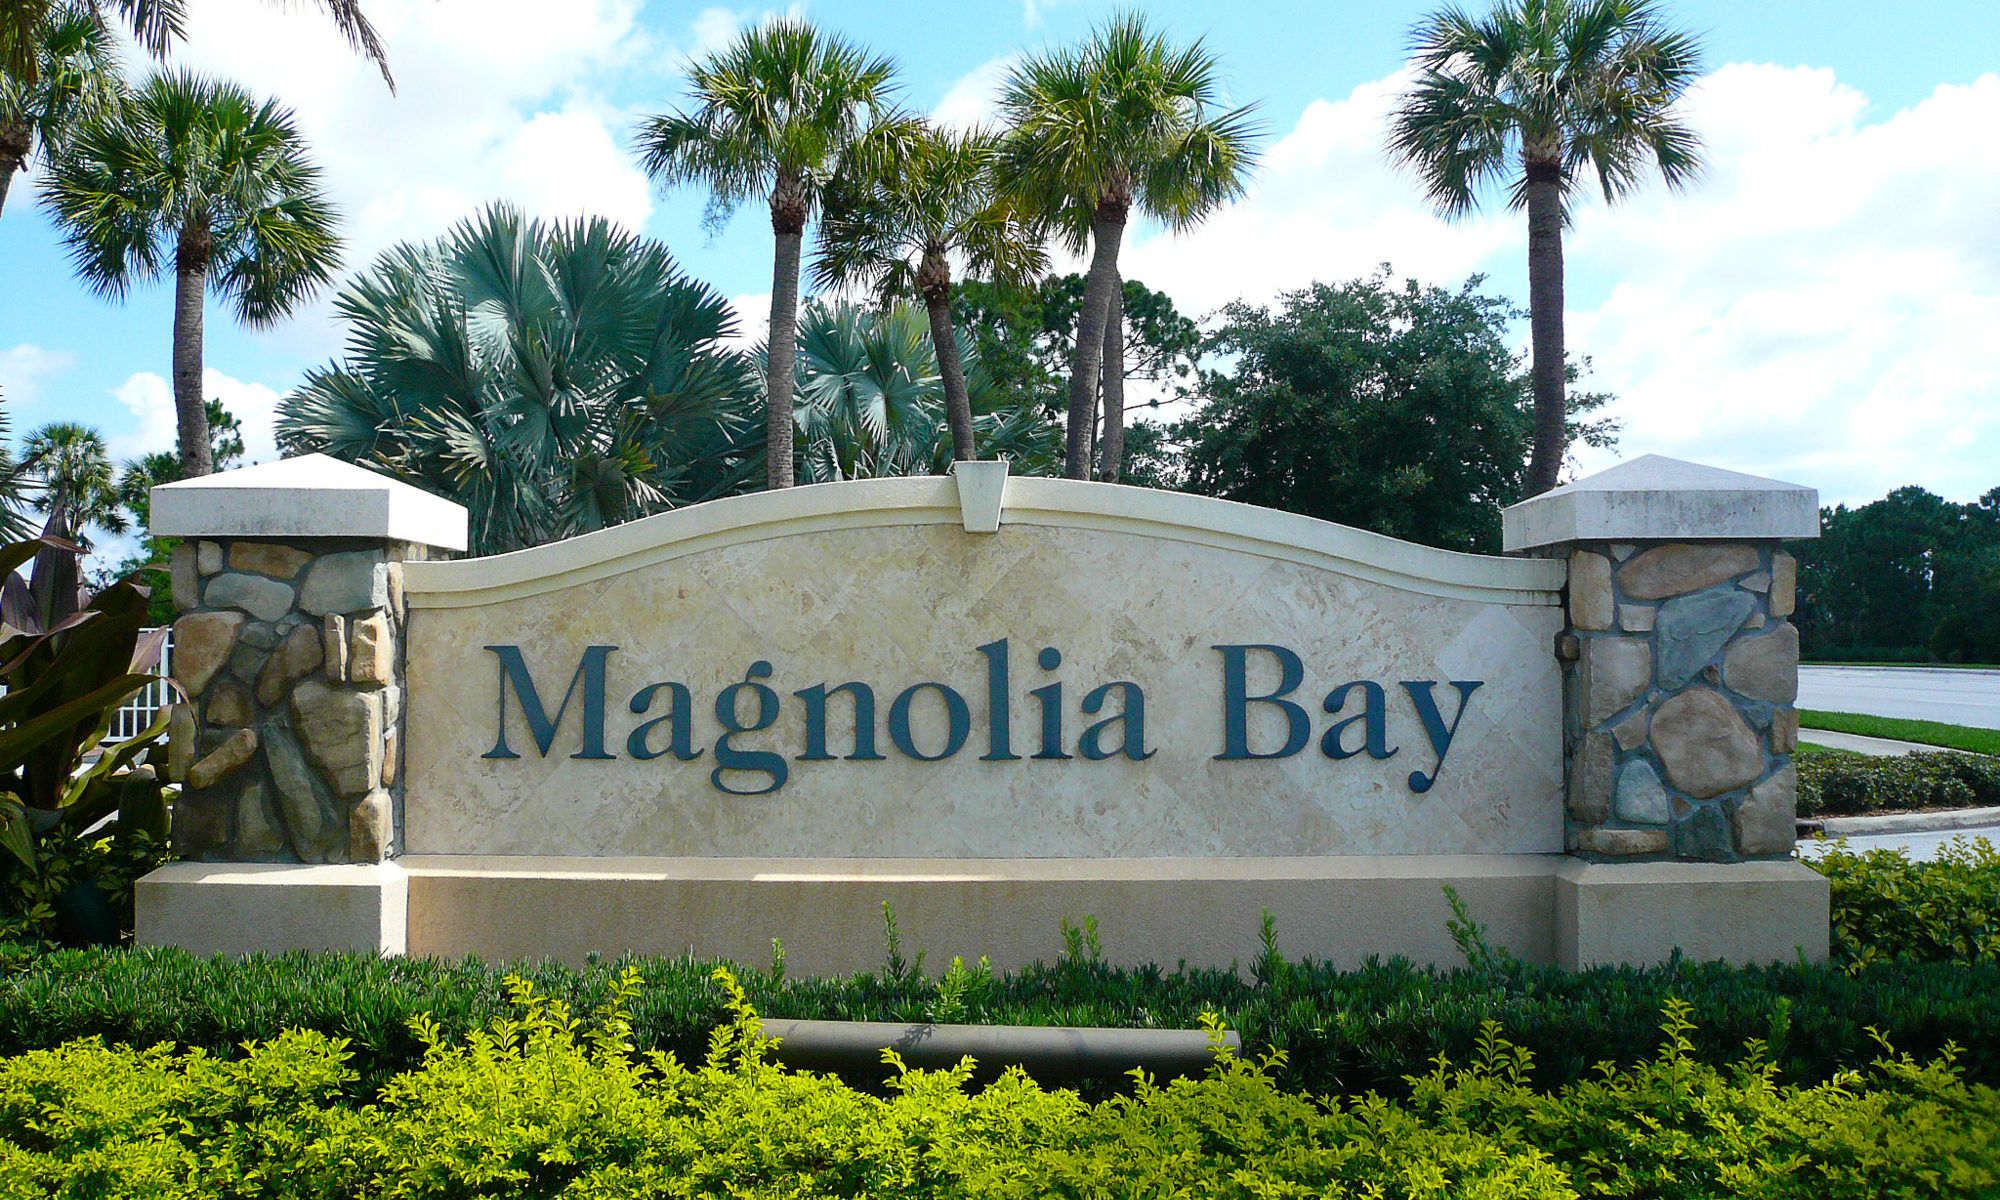 Magnolia Bay